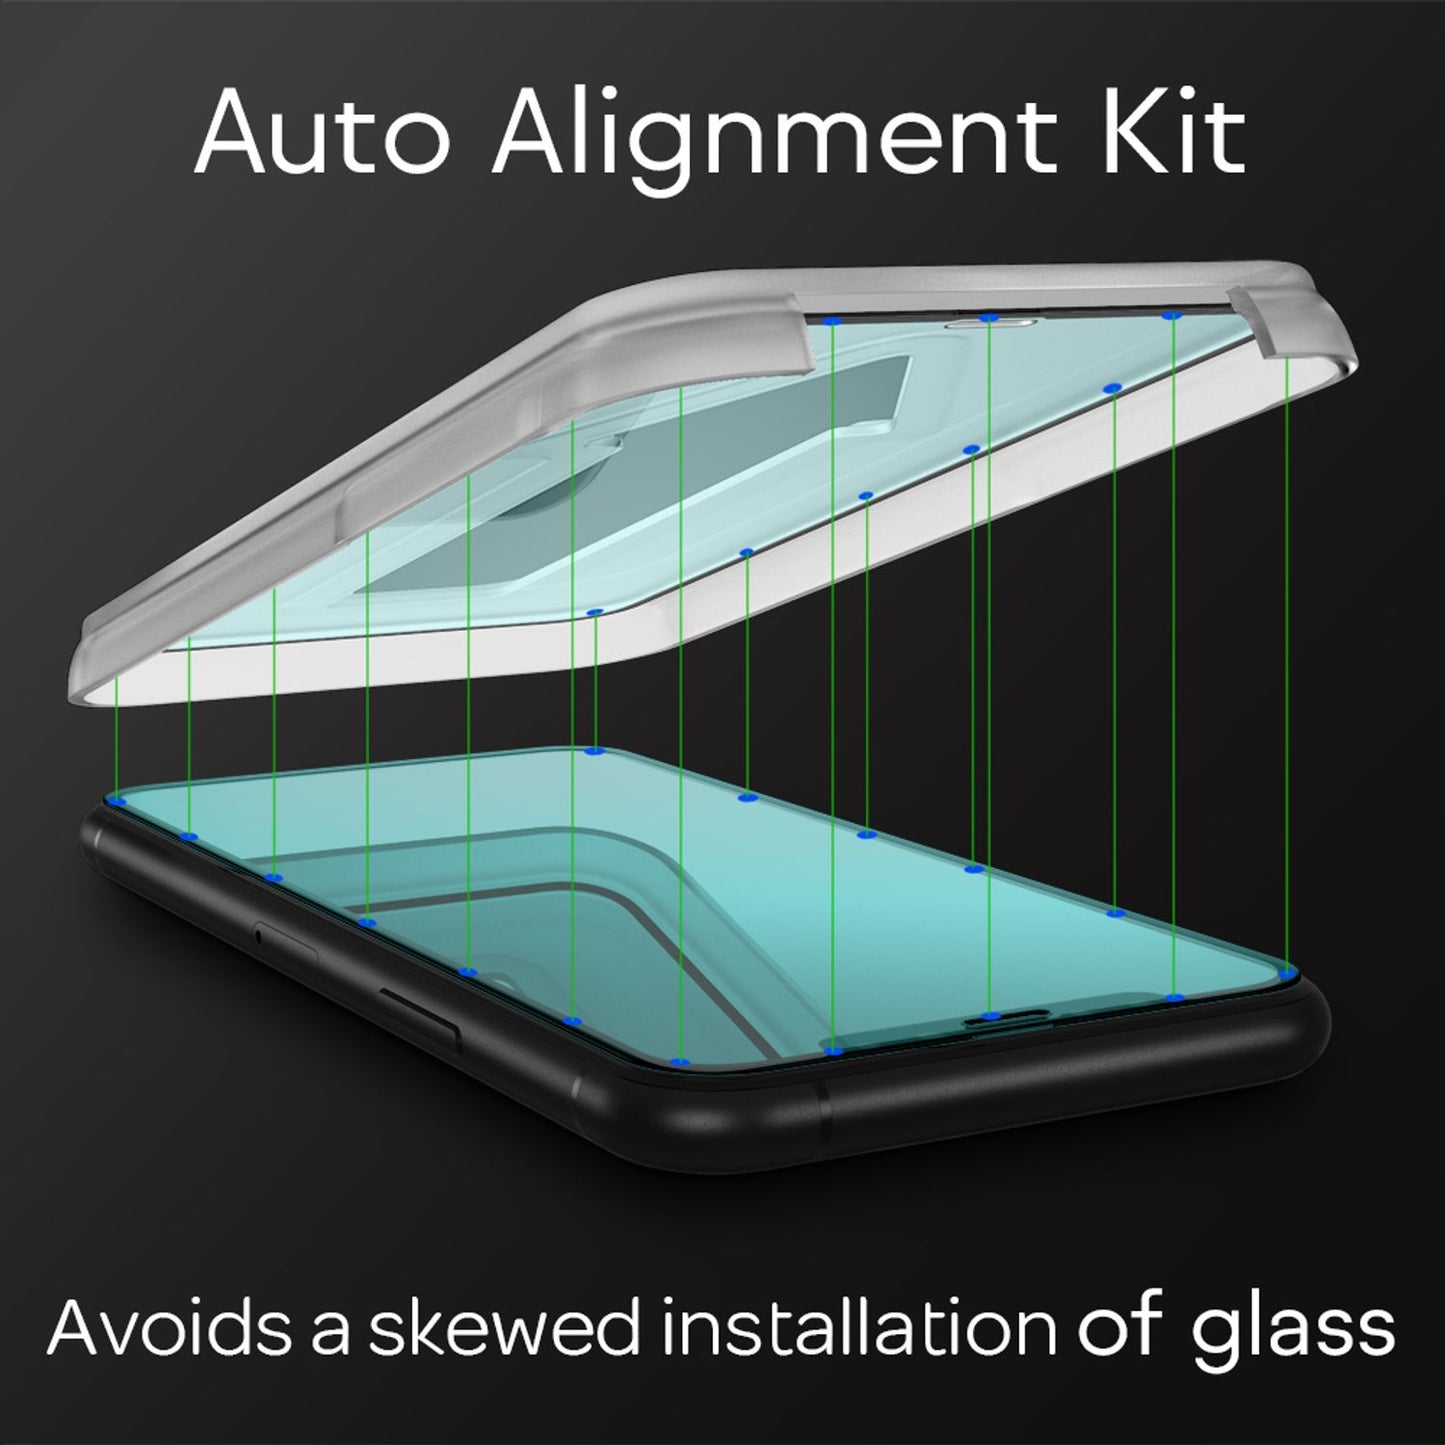 NALIA (2x) Schutzglas & Applikator für iPhone 11 Pro Max/ Xs Max, Tempered Glass